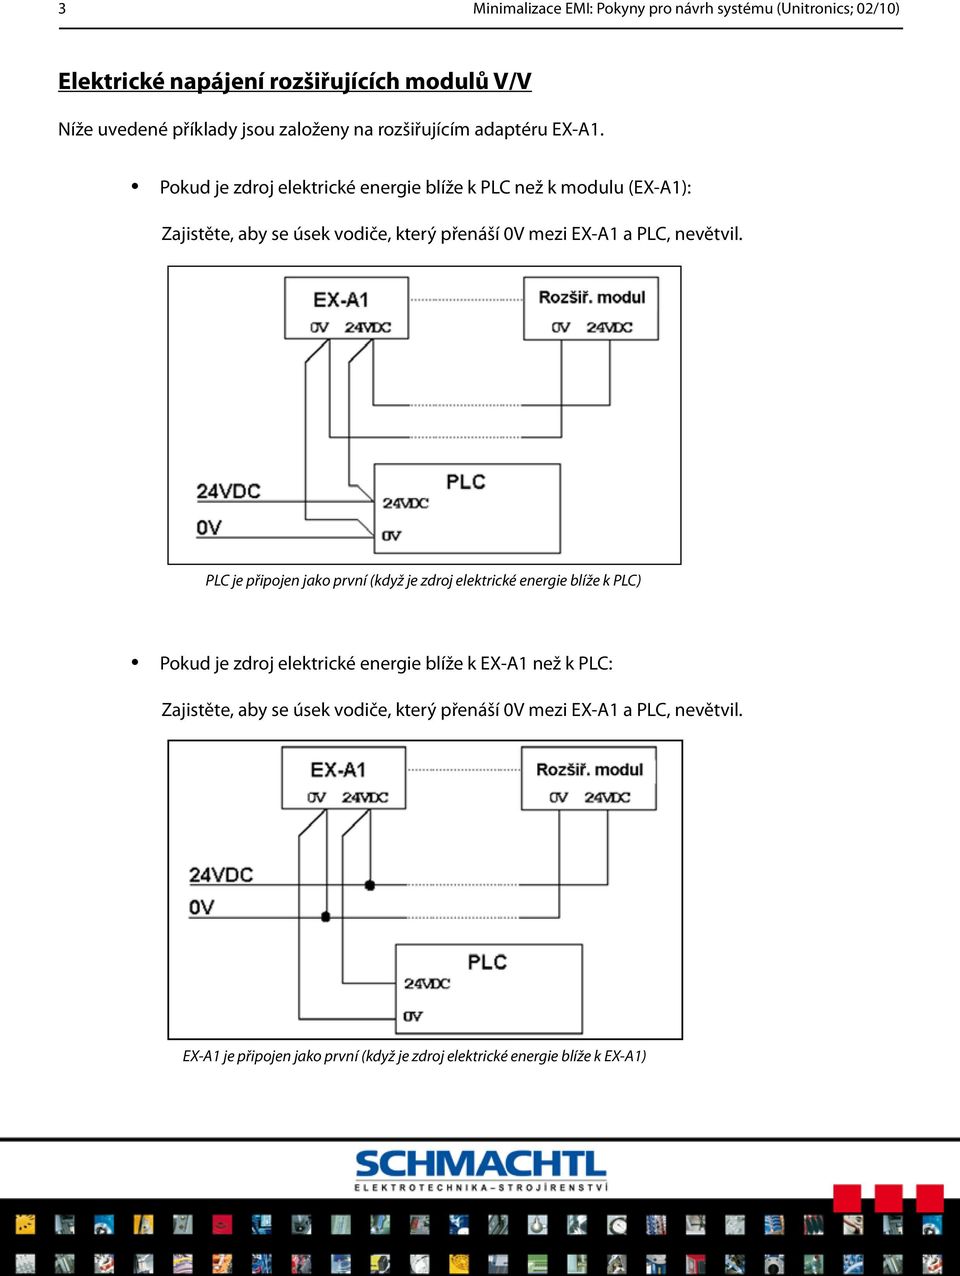 Pokud je zdroj elektrické energie blíže k PLC než k modulu (EX-A1): Zajistěte, aby se úsek vodiče, který přenáší 0V mezi EX-A1 a PLC, nevětvil.